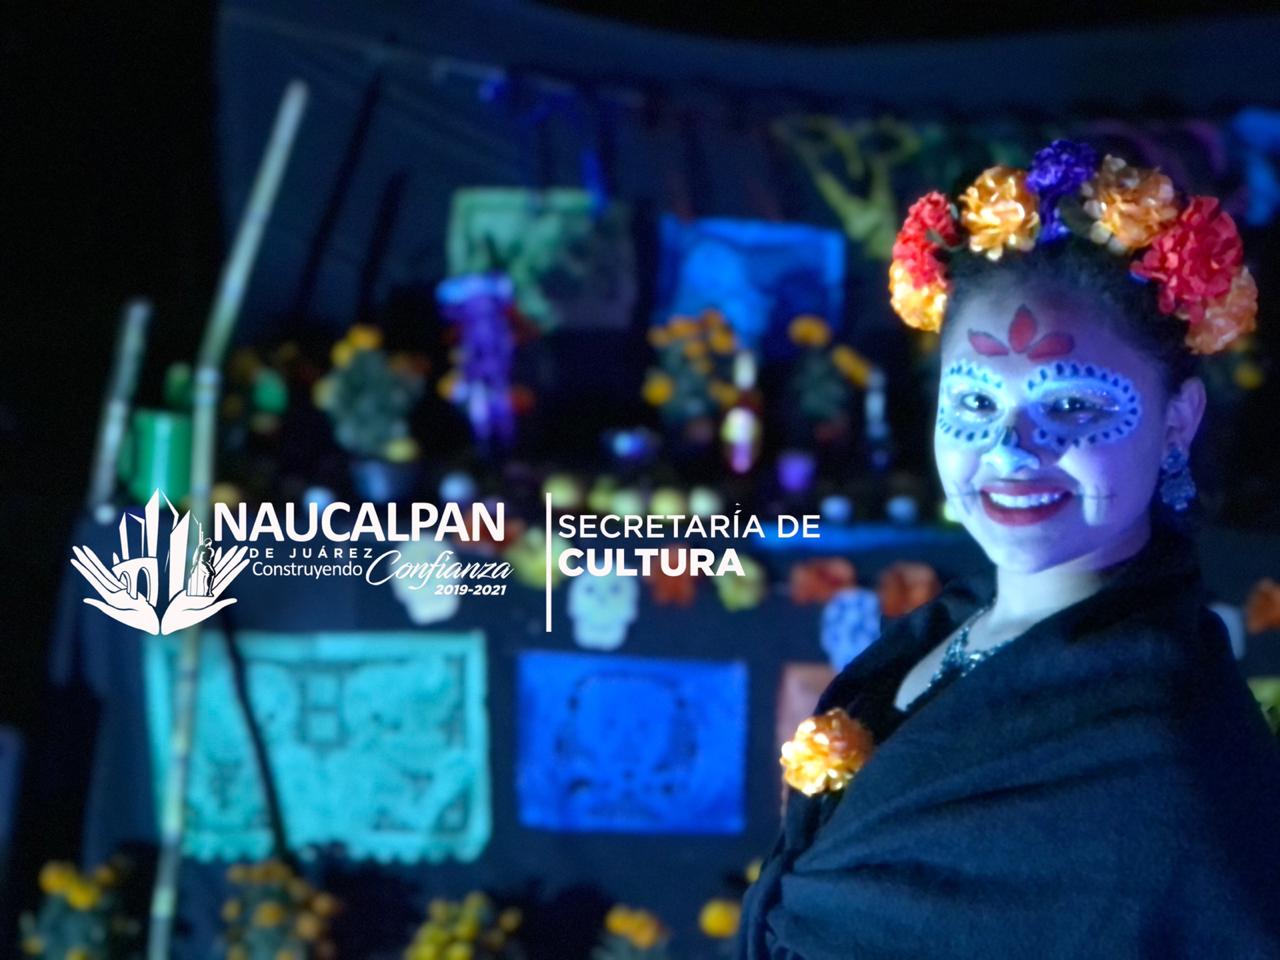 CCVN: la apuesta cultural digital del gobierno de Naucalpan #regionmx